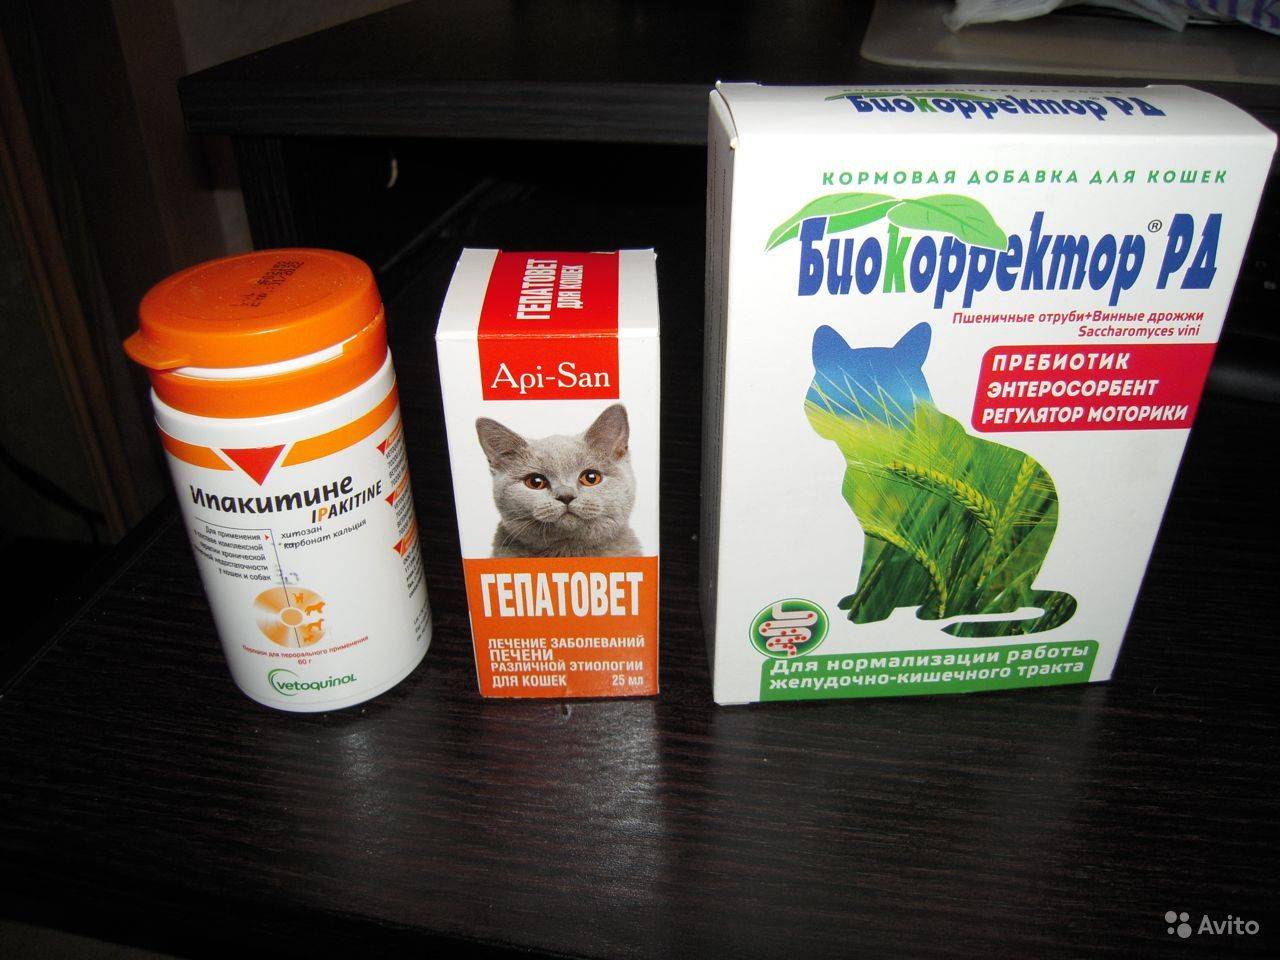 Ипакитине: лекарство для лечения почечной недостаточности у кошек